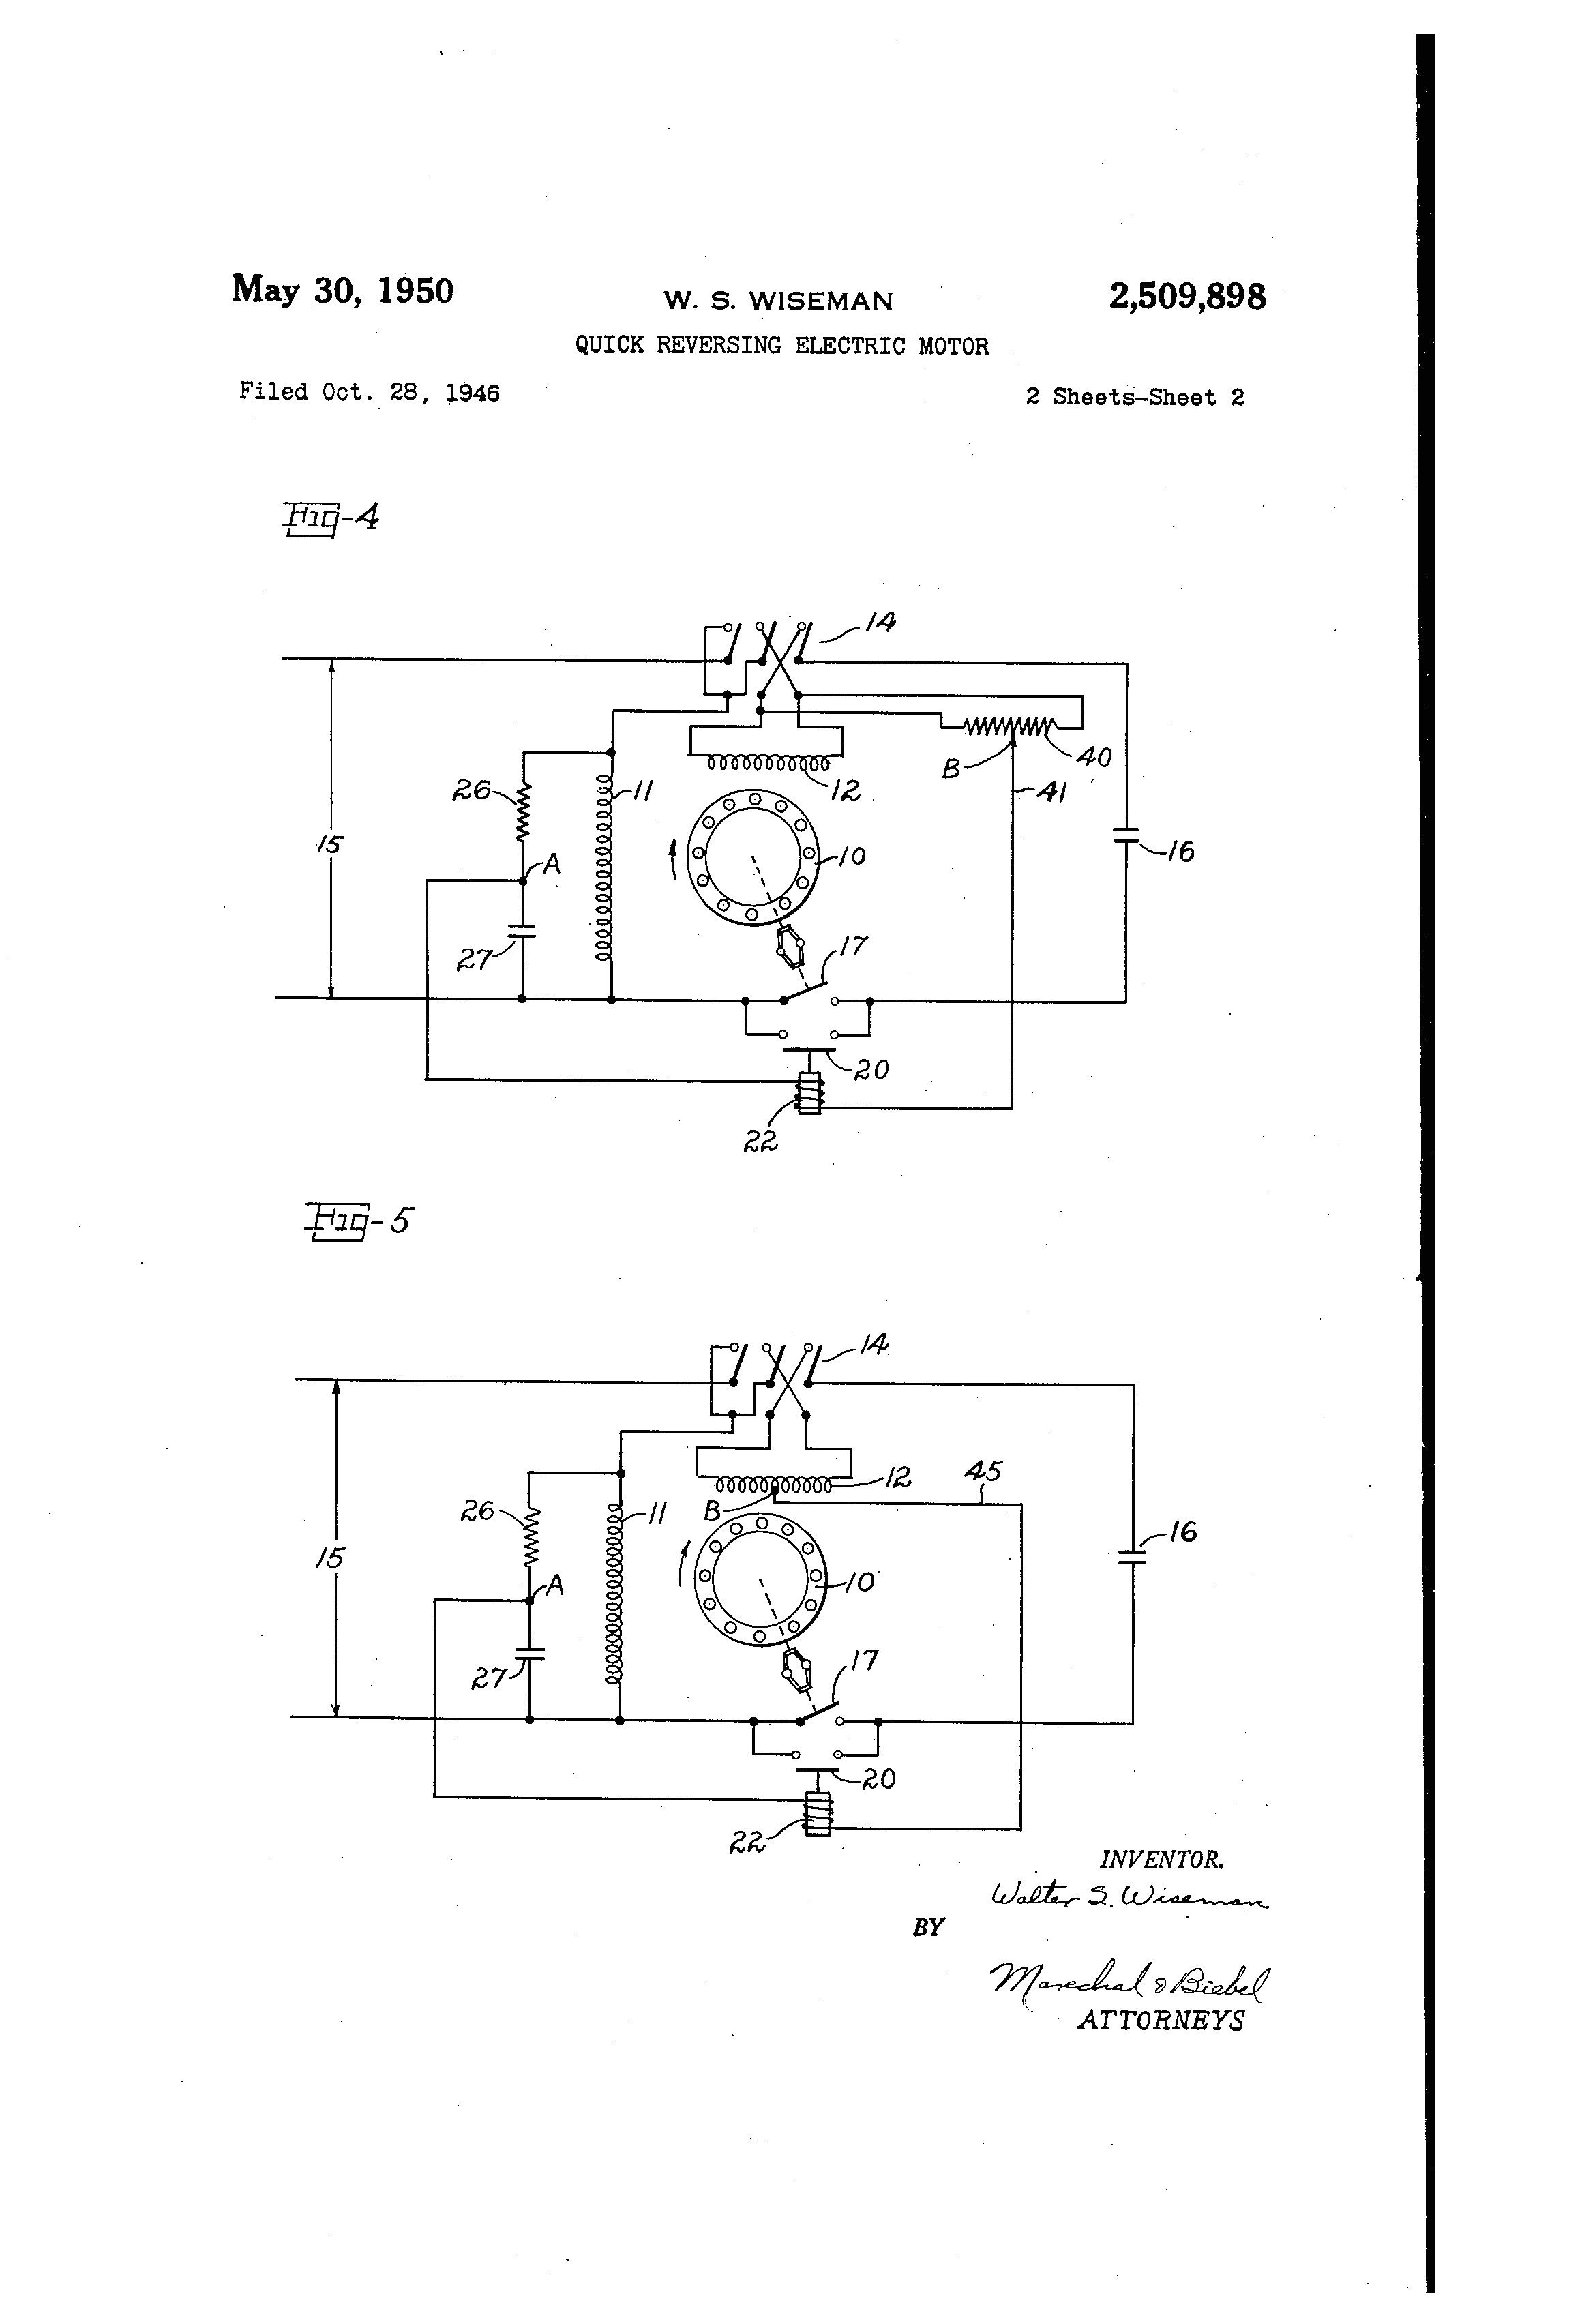 wagner motor wiring diagram wiring diagram centre wagner electric motor wagner motor wiring diagram